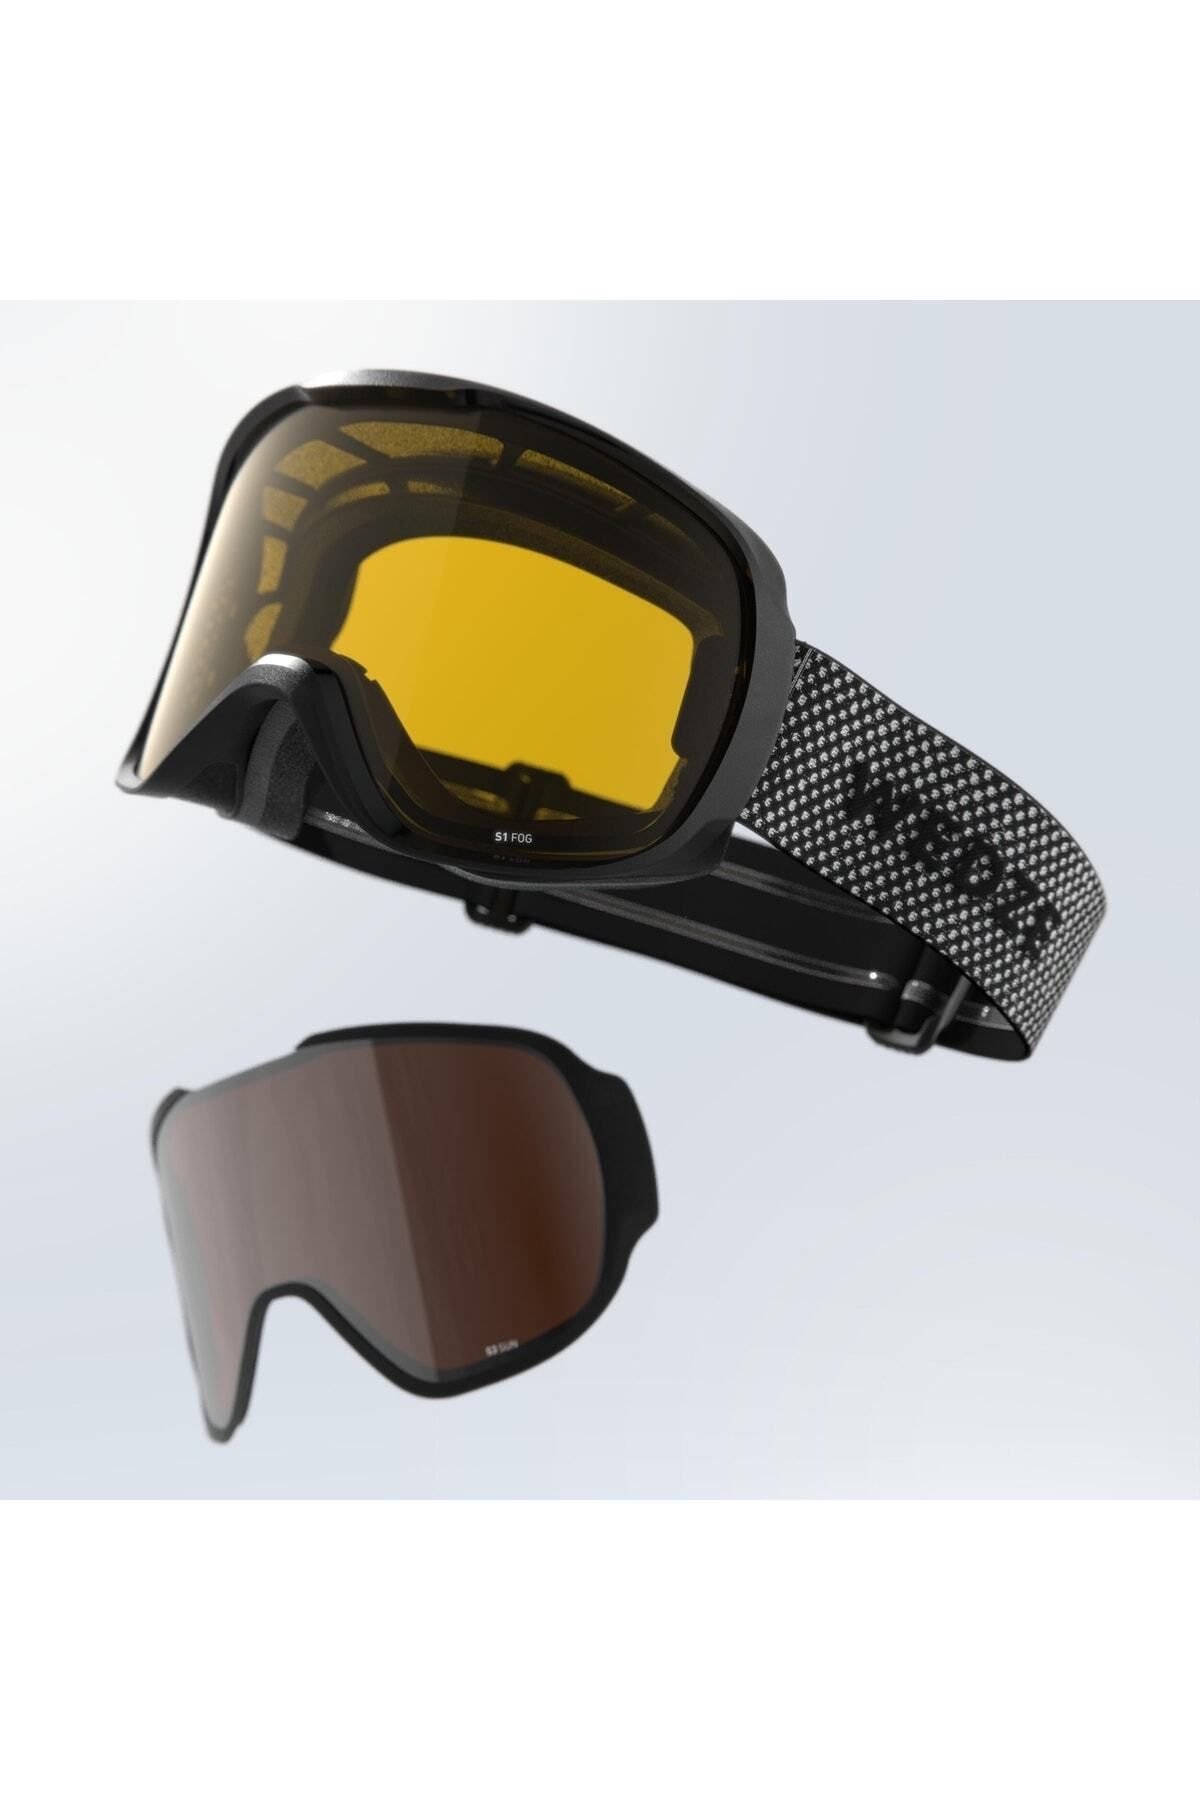 Decathlon Wedze Çocuk Kayak Ve Snowboard Maskesi - Gri - G 500 I